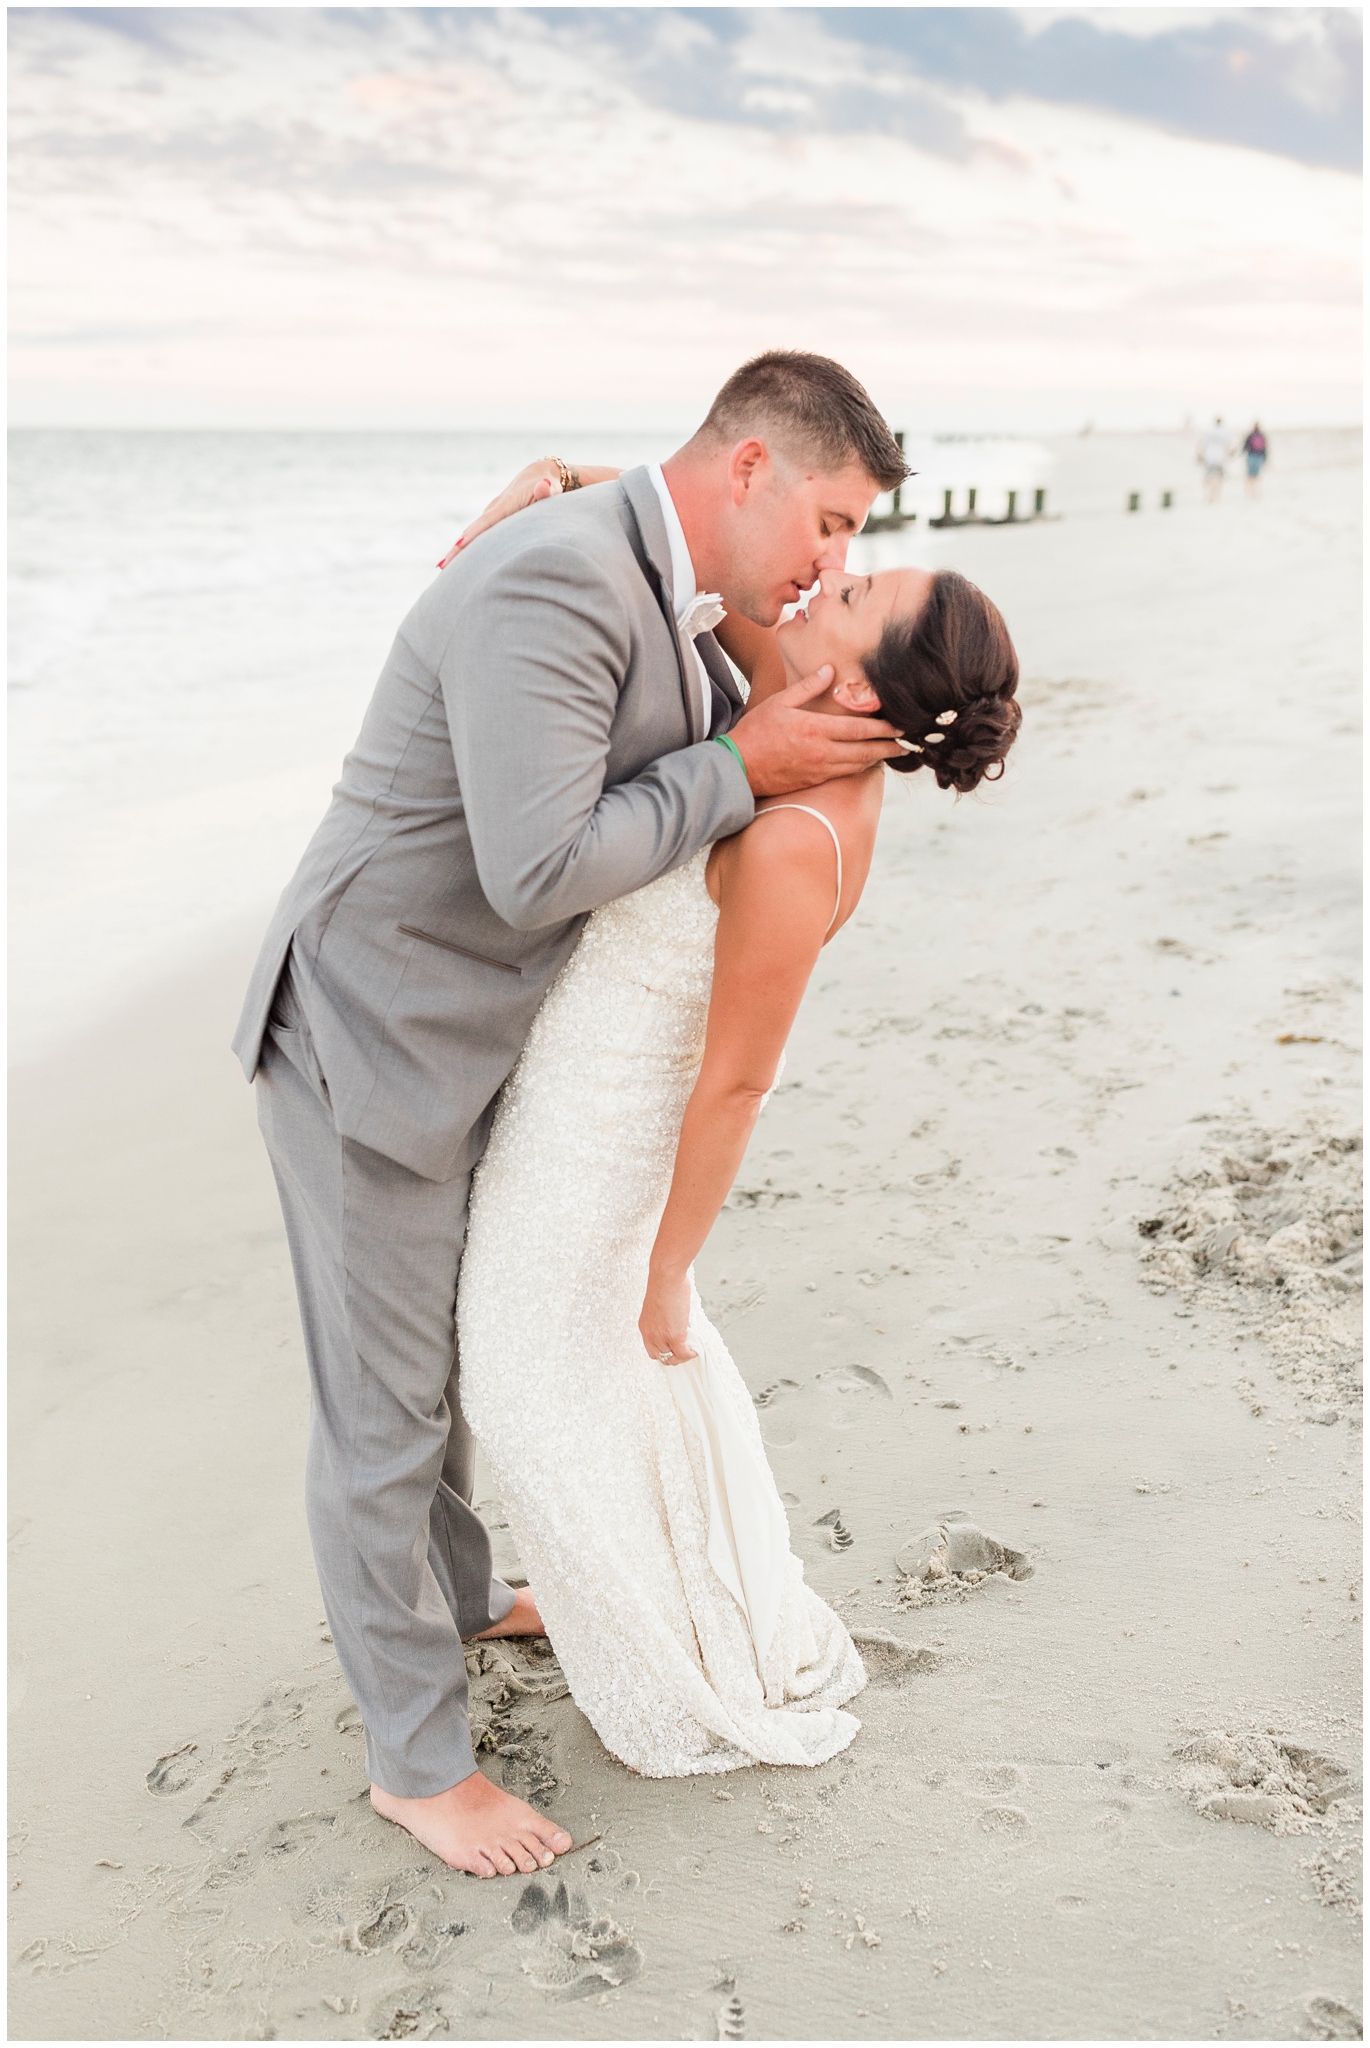 Wedding on the Beach NJ